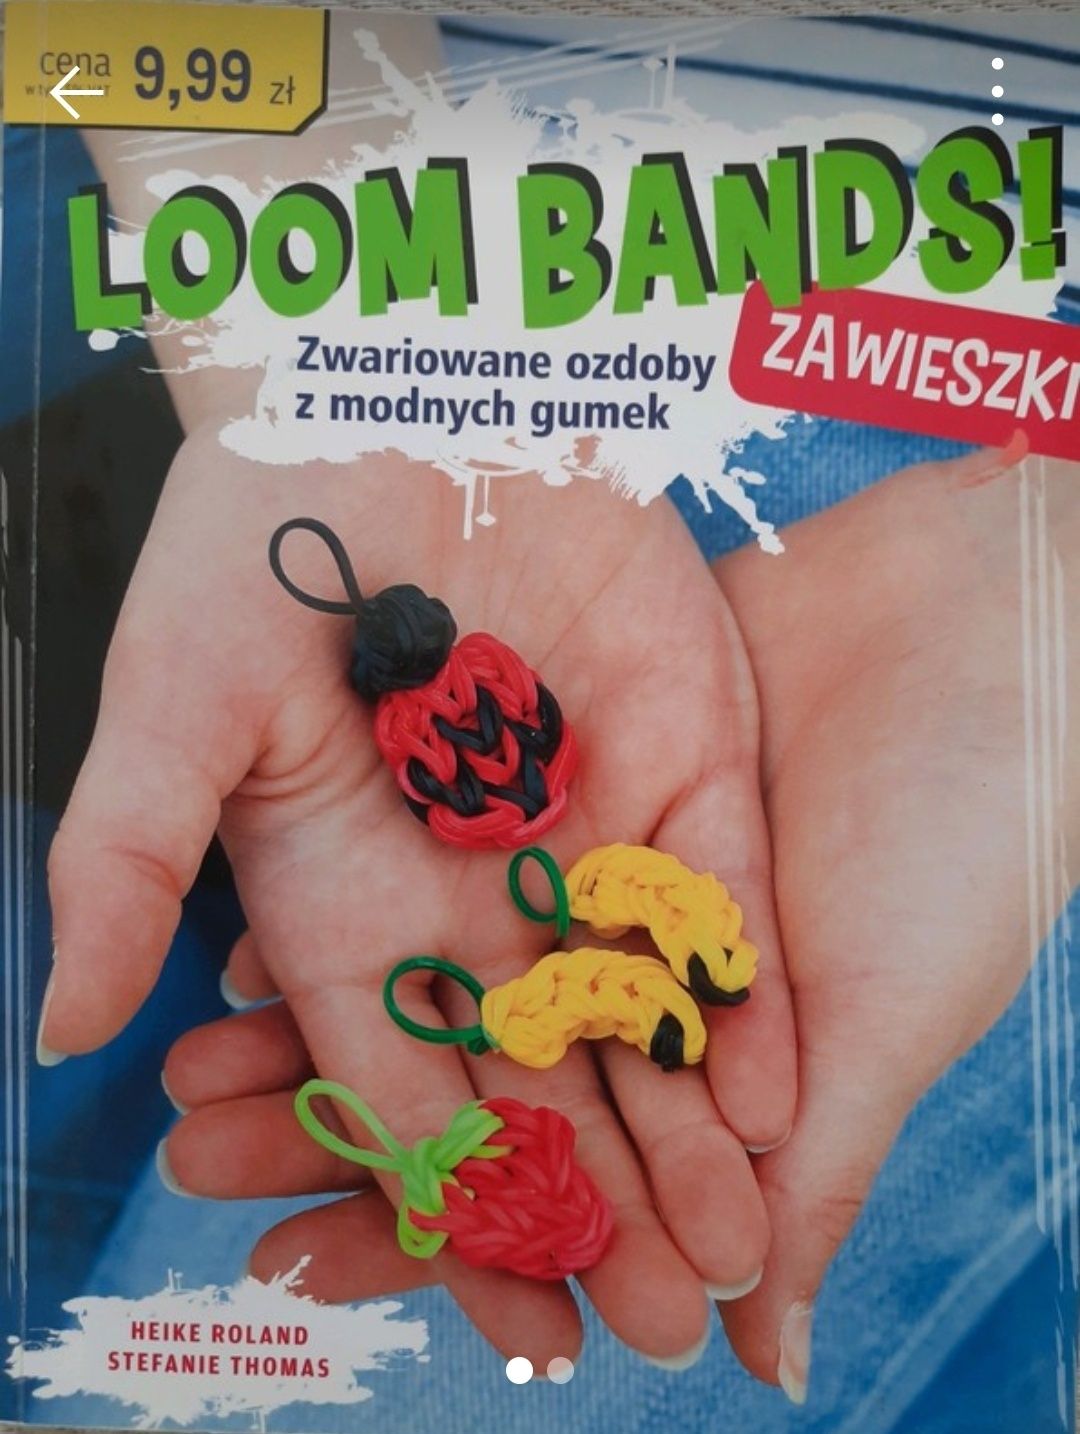 Loom Bands ozdoby z gumek zawieszki